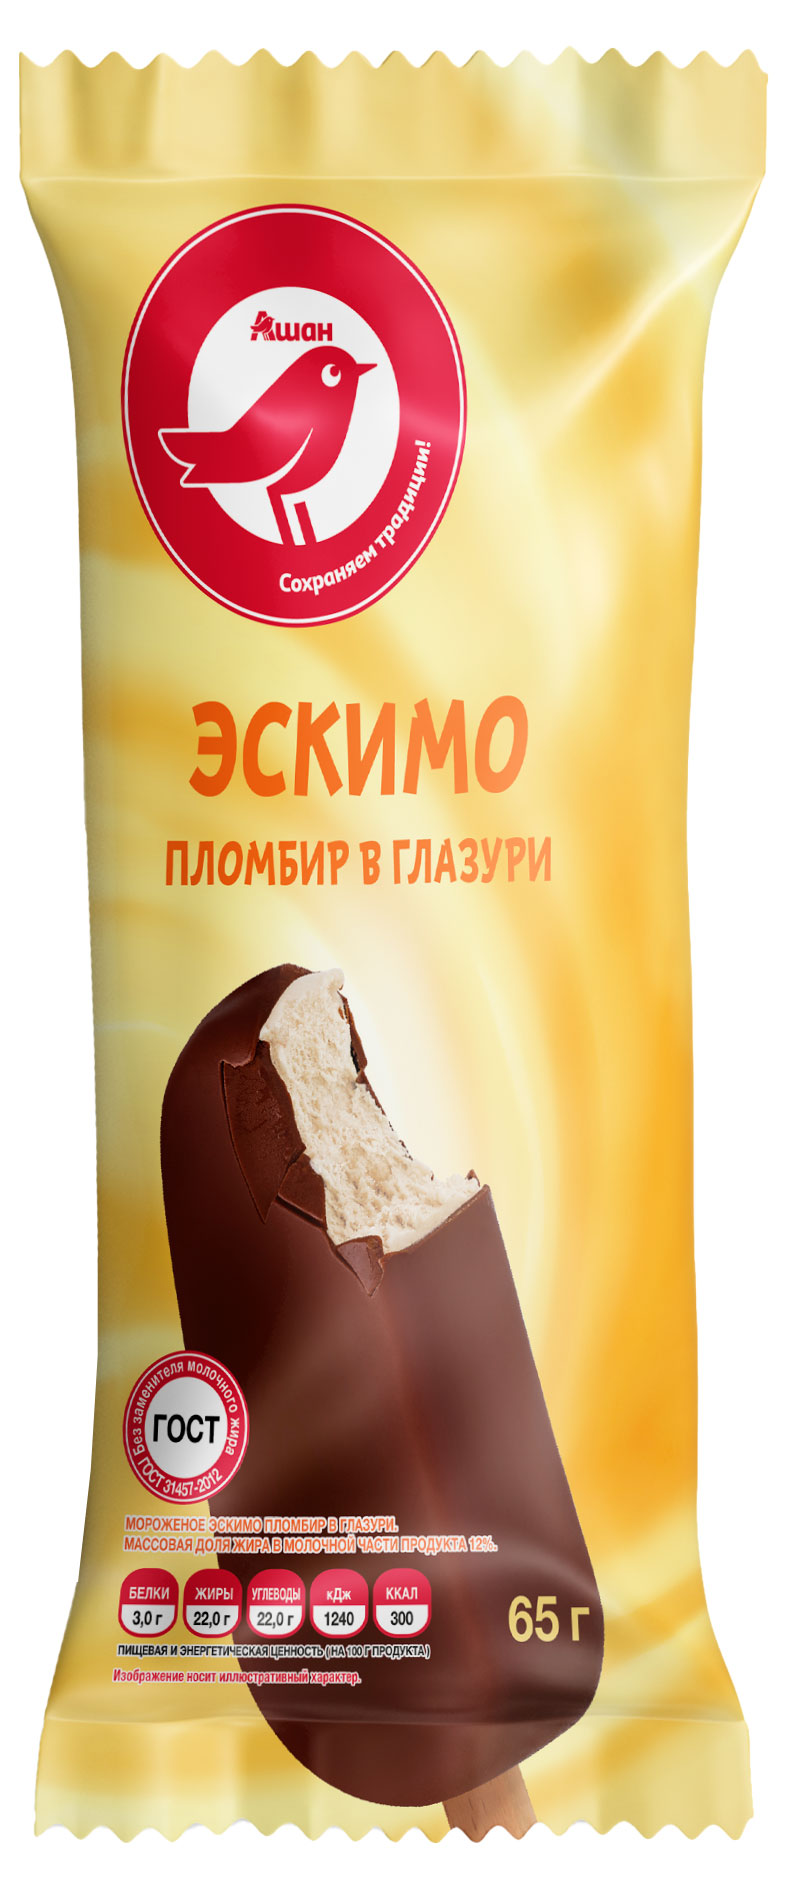 Мороженое пломбир АШАН Красная птица Эскимо в шоколадной глазури, 65 г